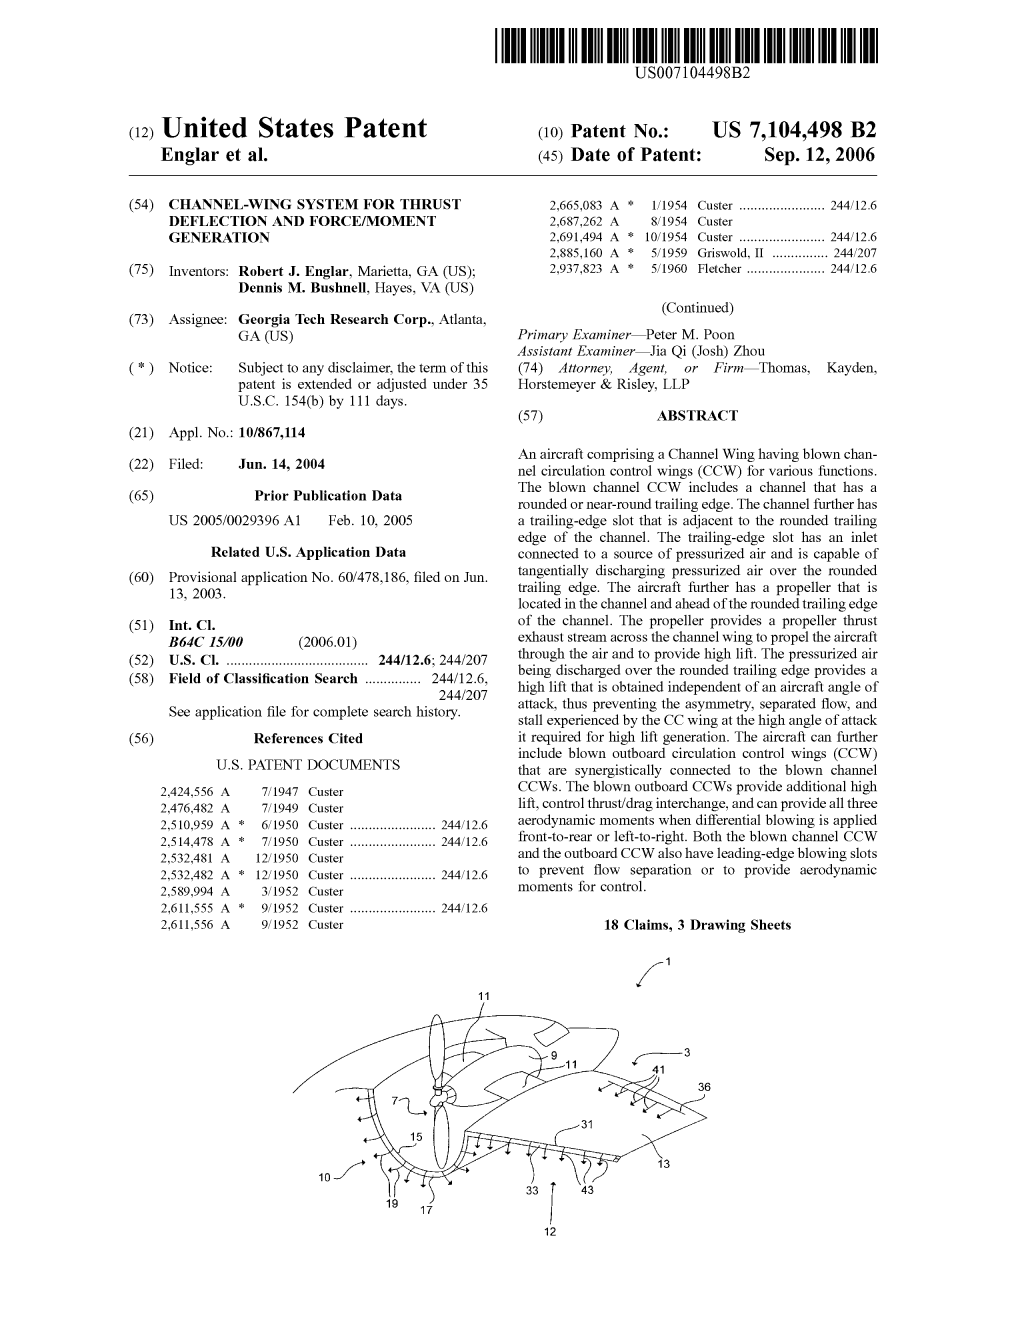 C12) United States Patent (10) Patent No.: US 7,104,498 B2 Englar Et Al